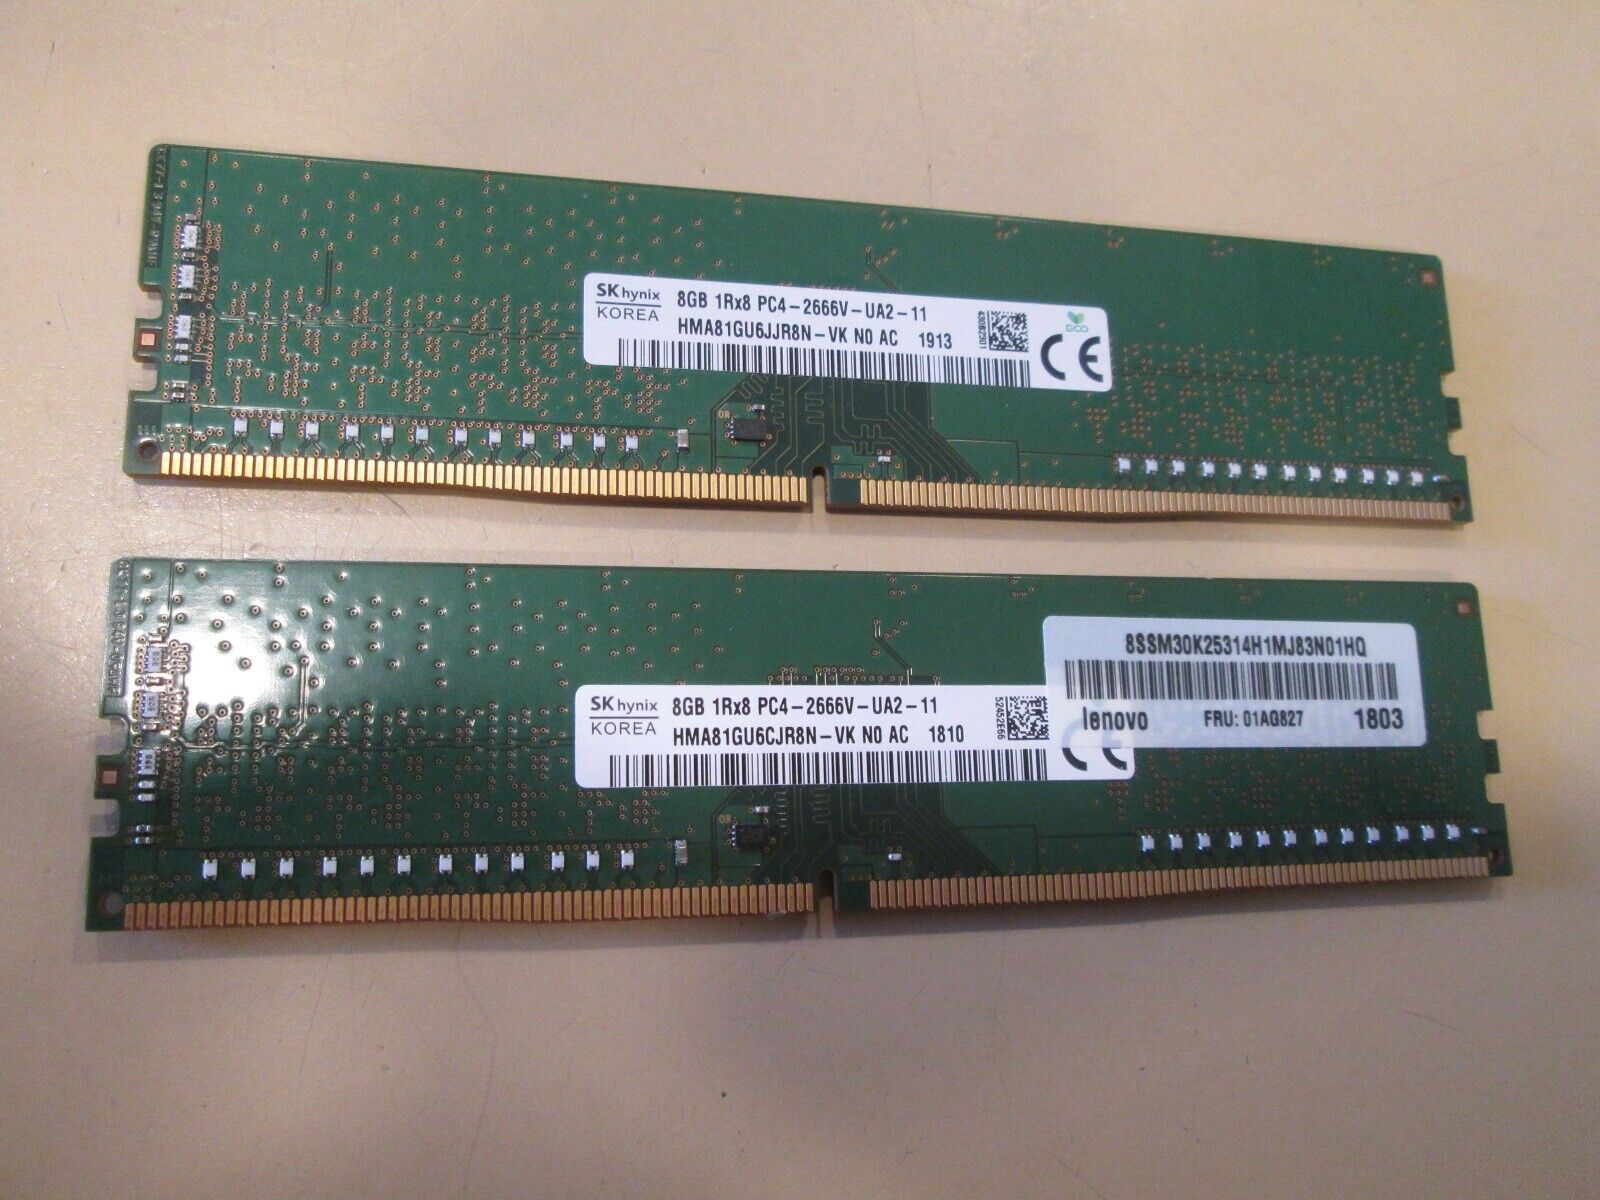 SK Hynix 16GB (2X8GB) DDR4 2666MHz RAM 1Rx8 PC4-2666V-UA2 HMA81GU6JJR8N-VK DIMM